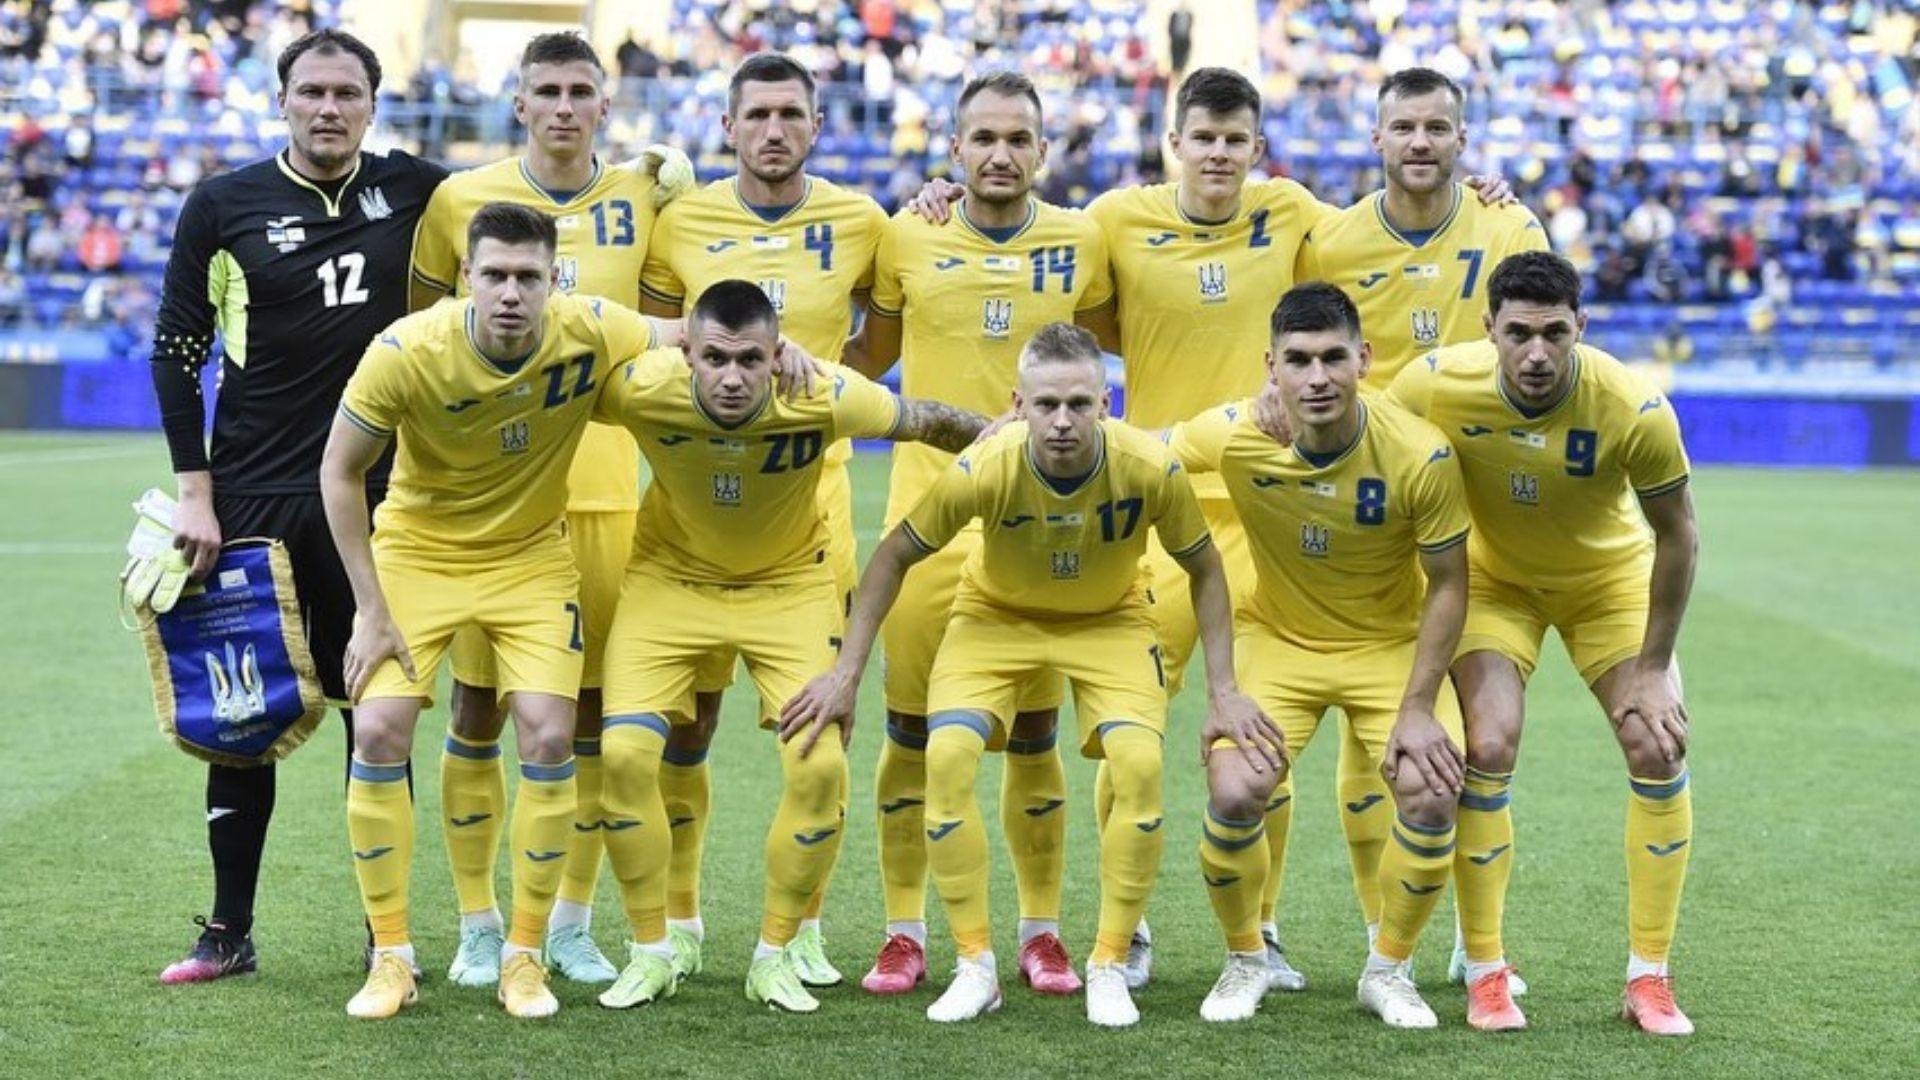 Uefa manda Ucrânia tirar do seu uniforme frase considerada “política” pela Rússia